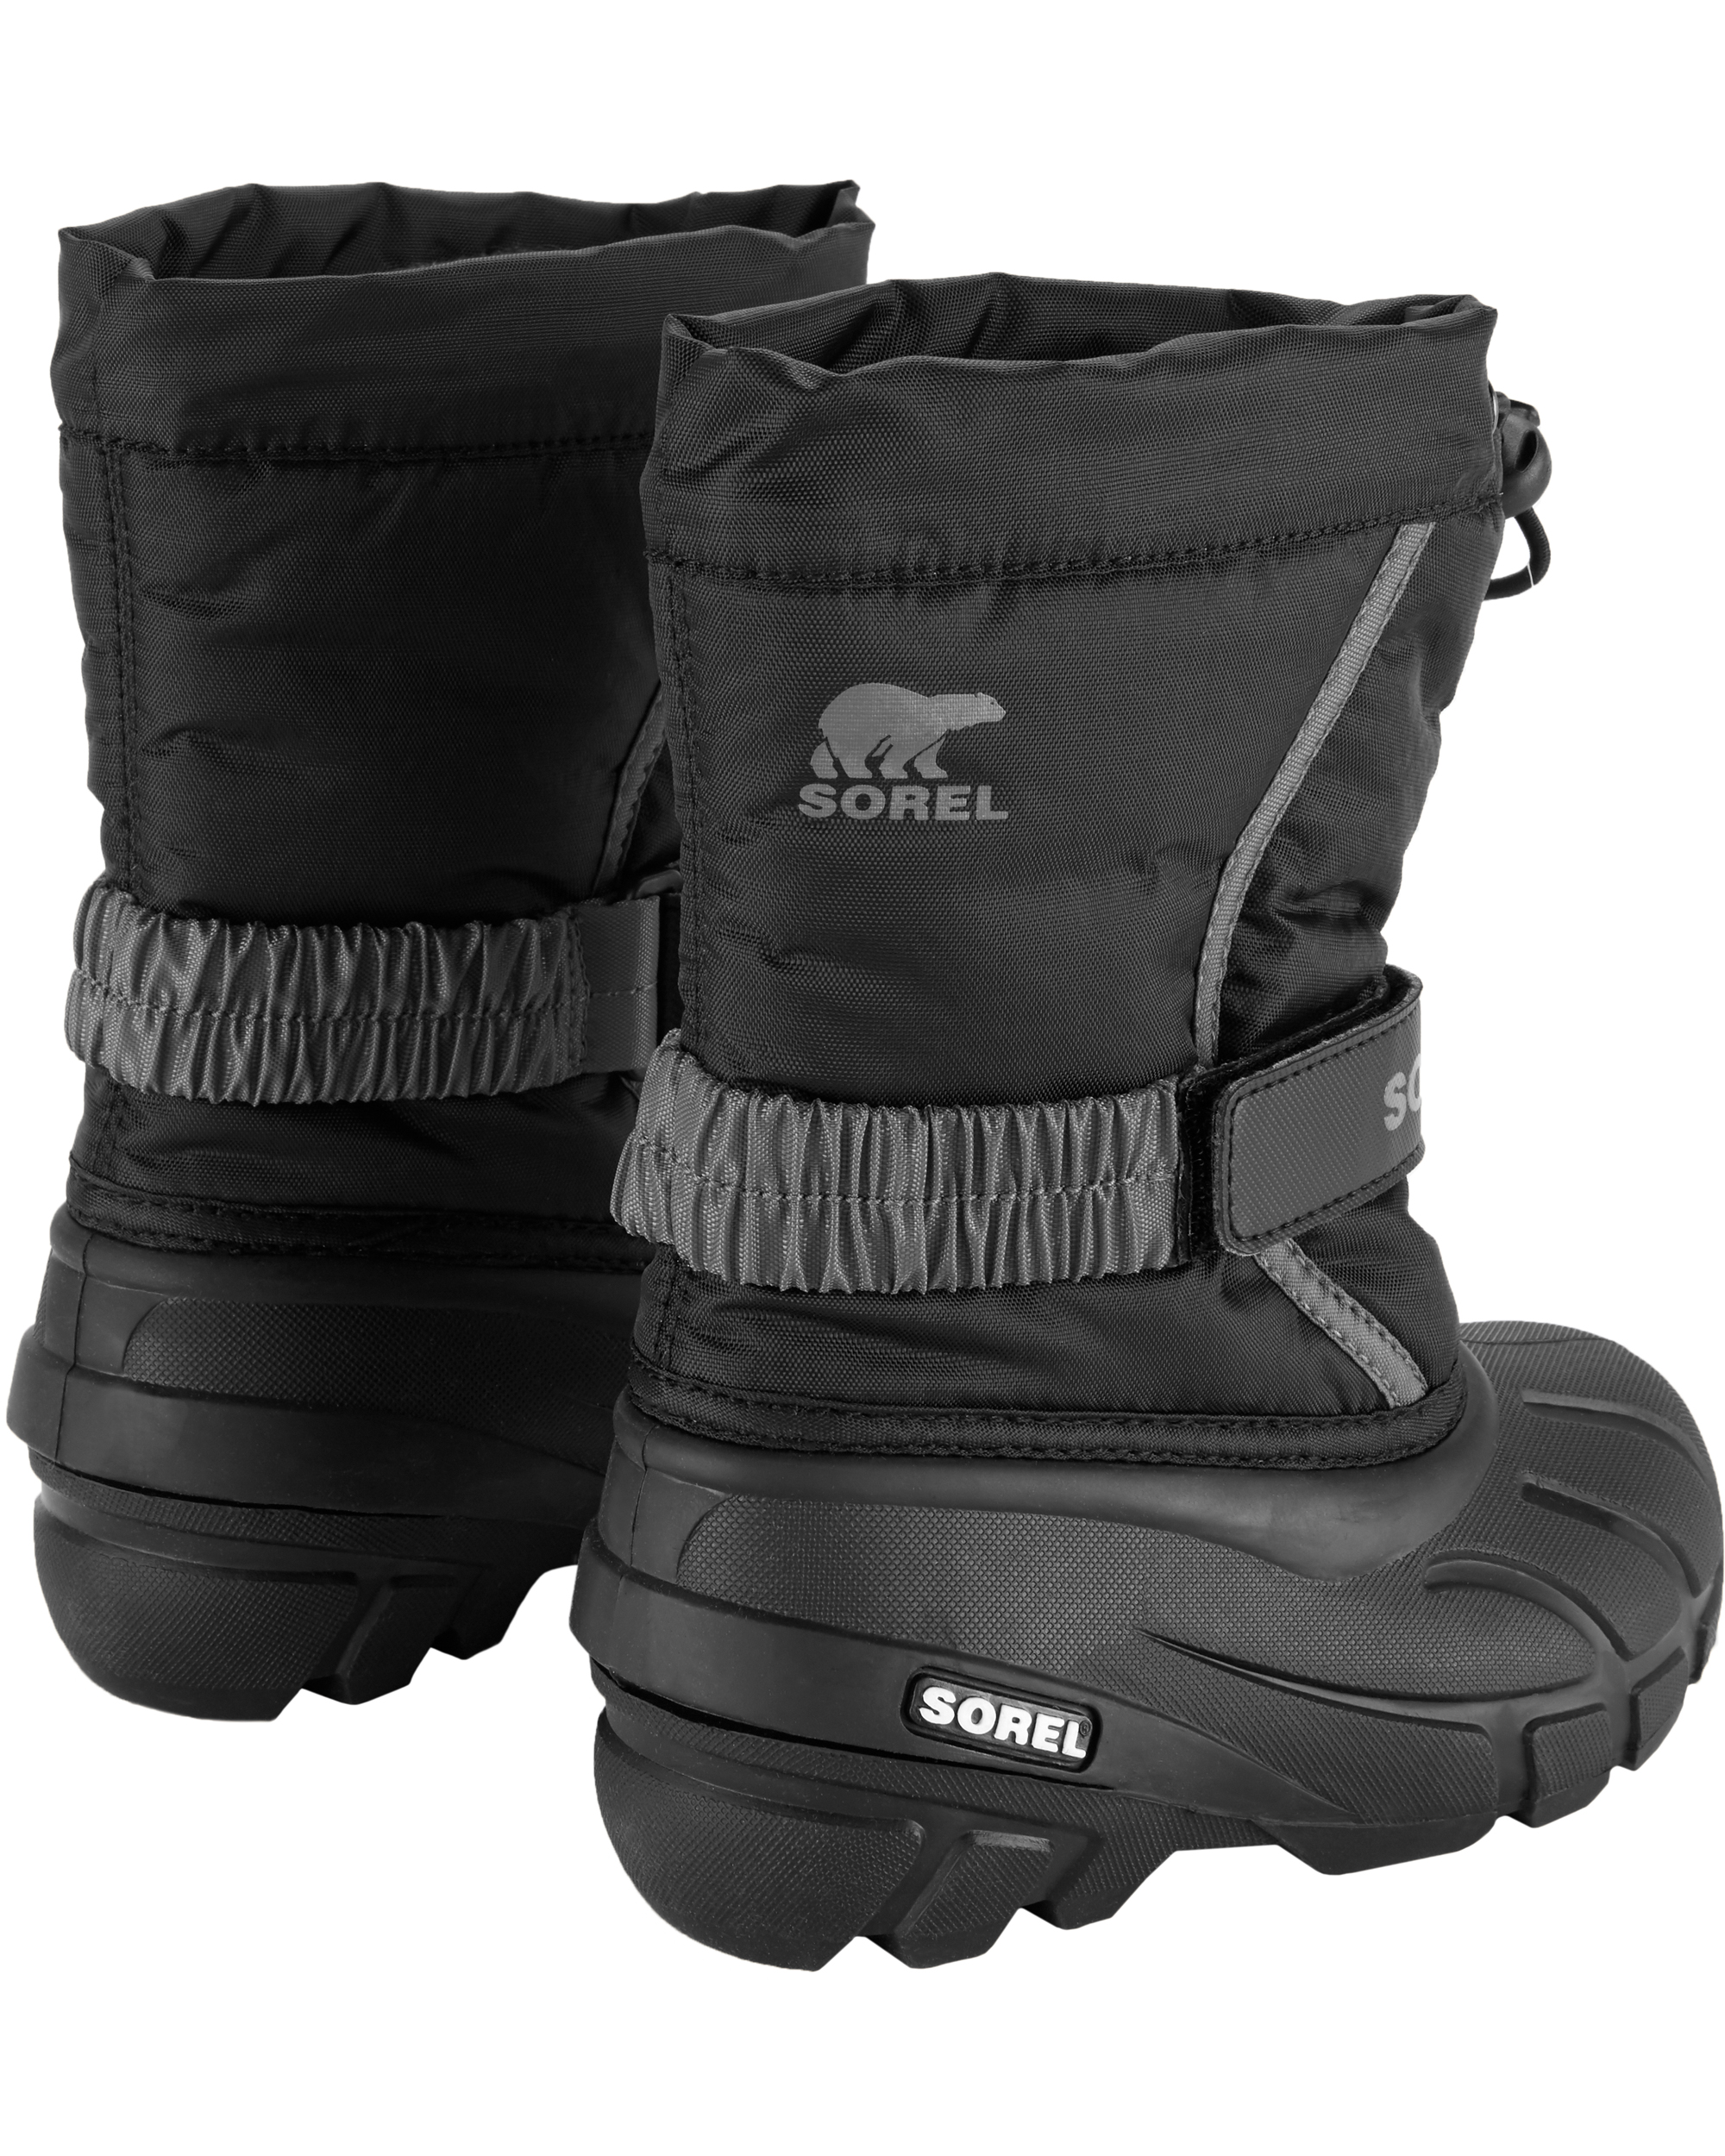 sorel flurry winter boots canada